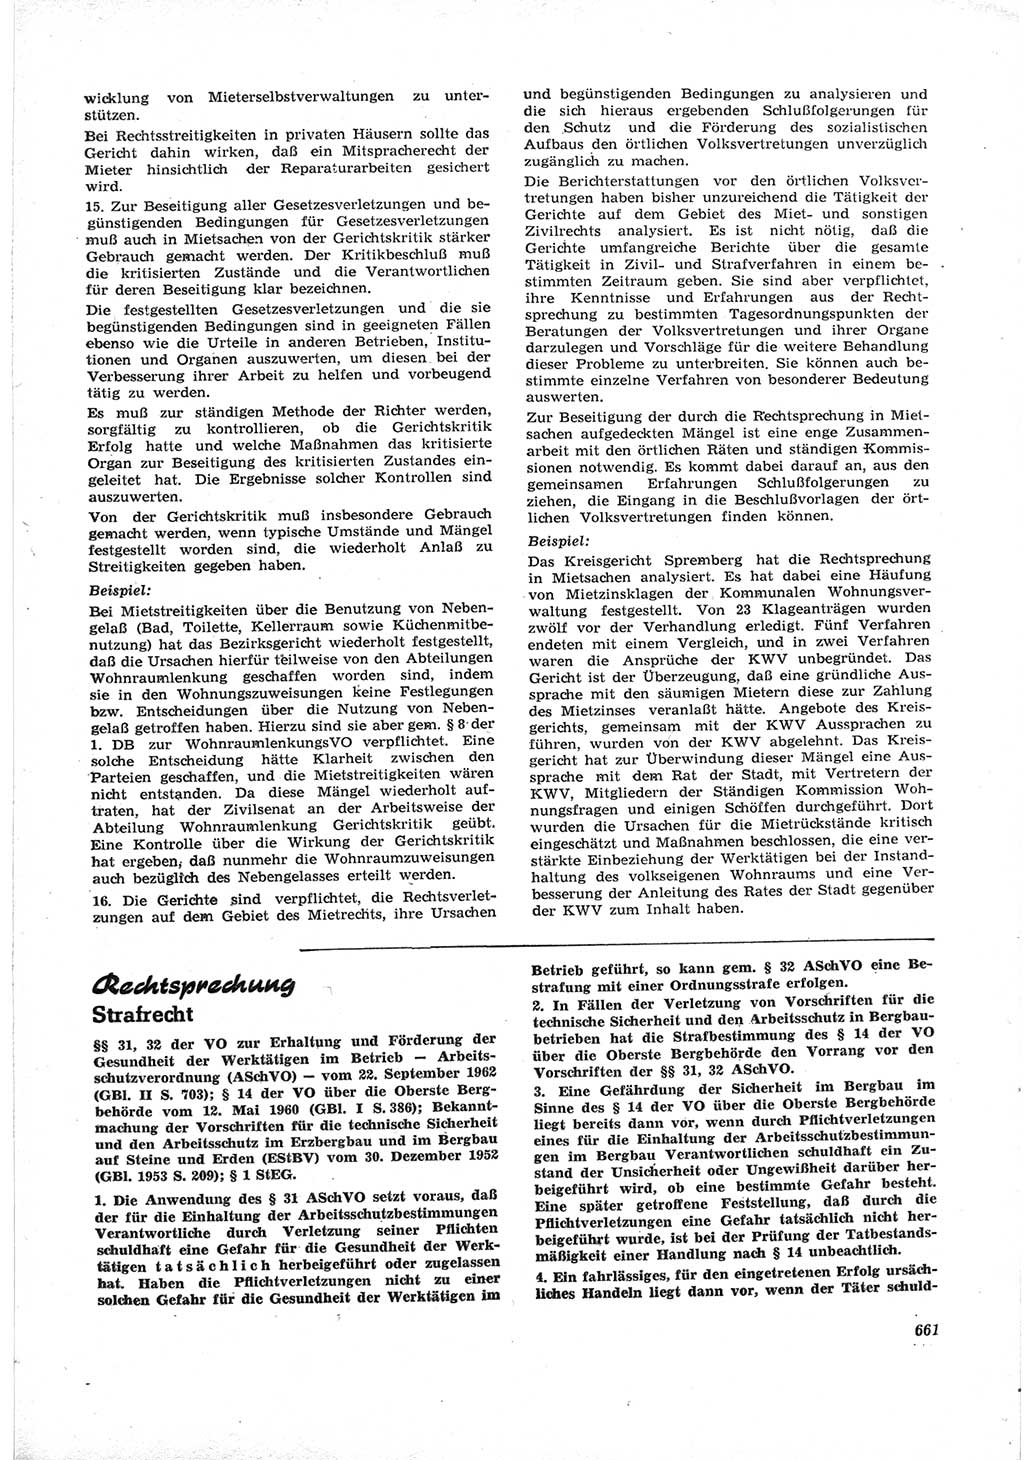 Neue Justiz (NJ), Zeitschrift für Recht und Rechtswissenschaft [Deutsche Demokratische Republik (DDR)], 17. Jahrgang 1963, Seite 661 (NJ DDR 1963, S. 661)